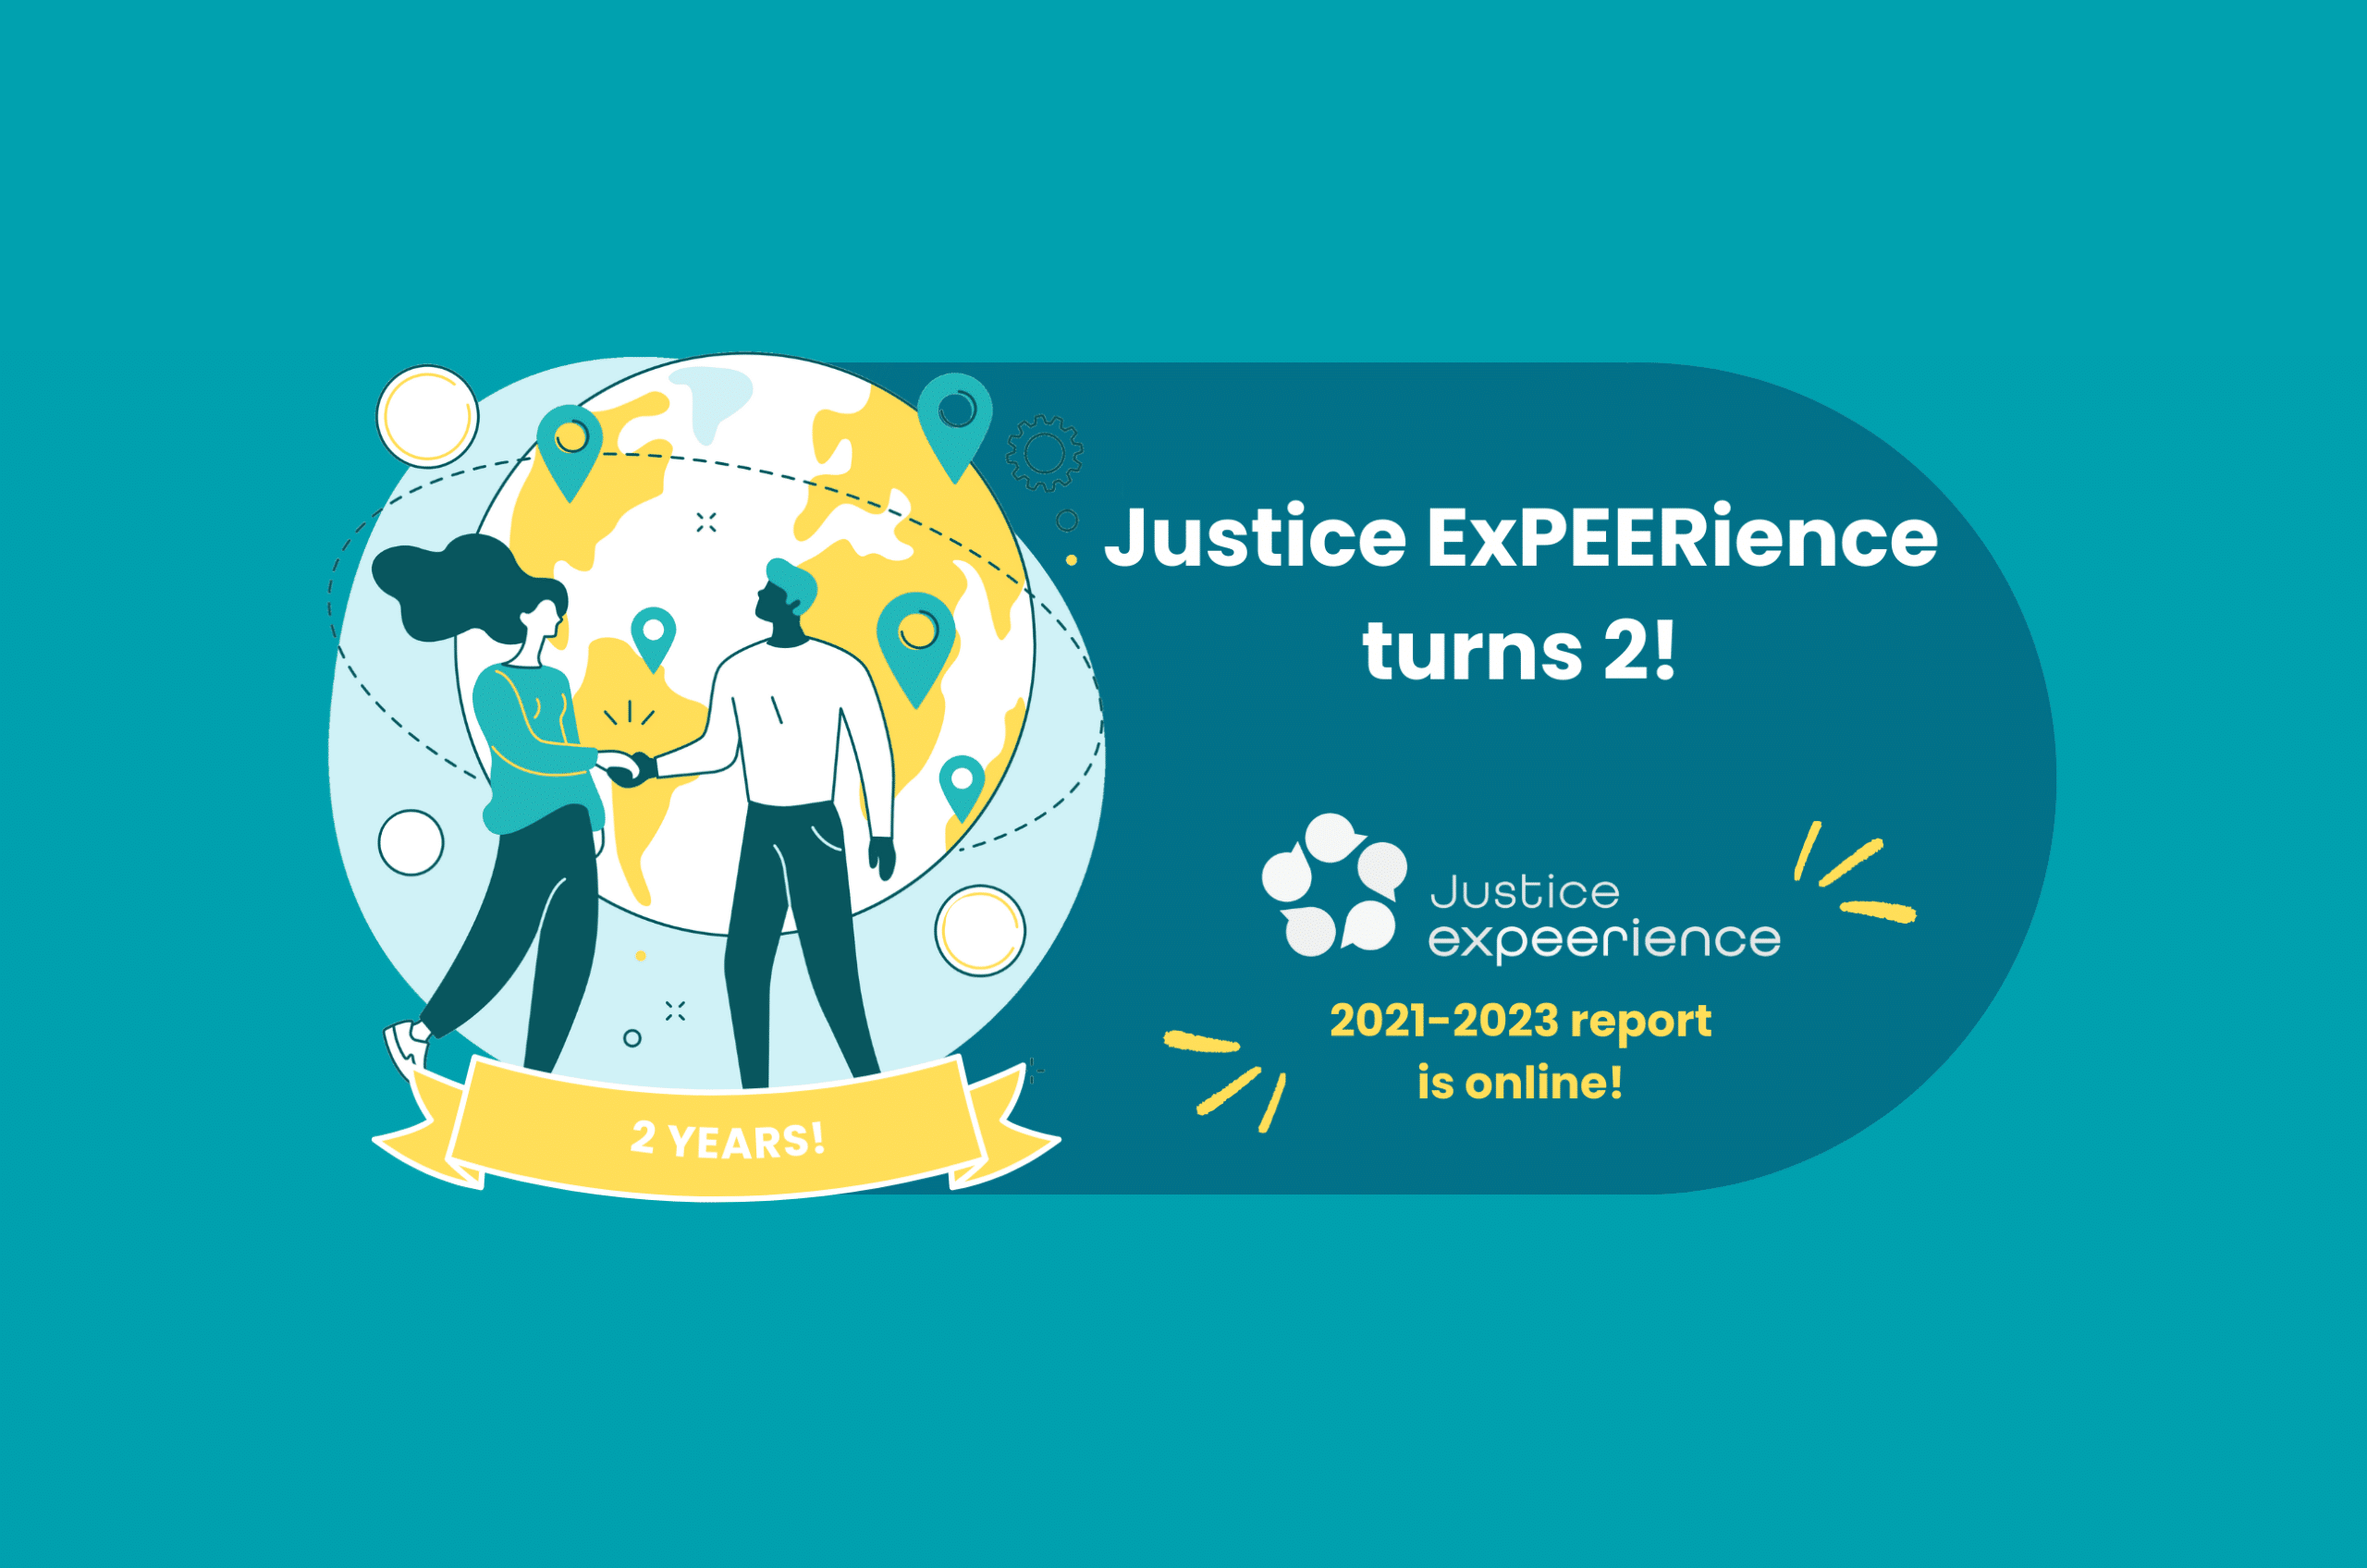 Justice ExPEERience, het mensenrechten netwerk gelanceerd door AdZG, viert haar tweede verjaardag